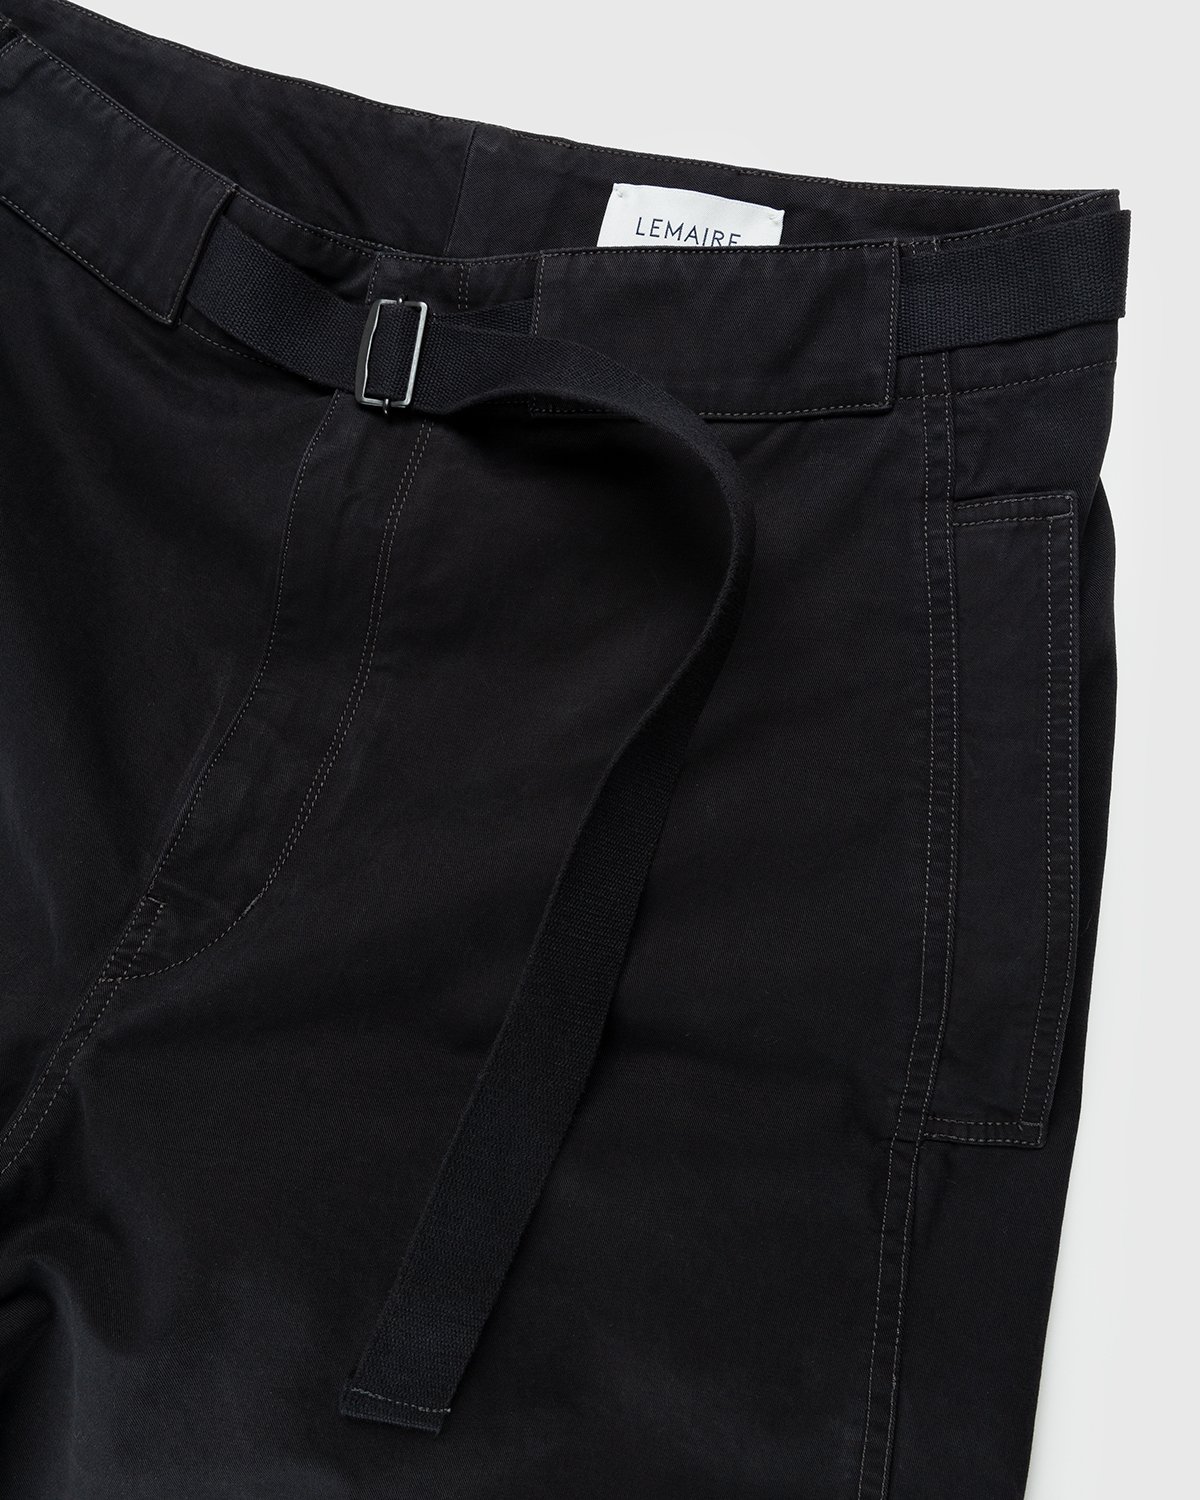 Lemaire - Utility Pants Black - Clothing - Black - Image 4